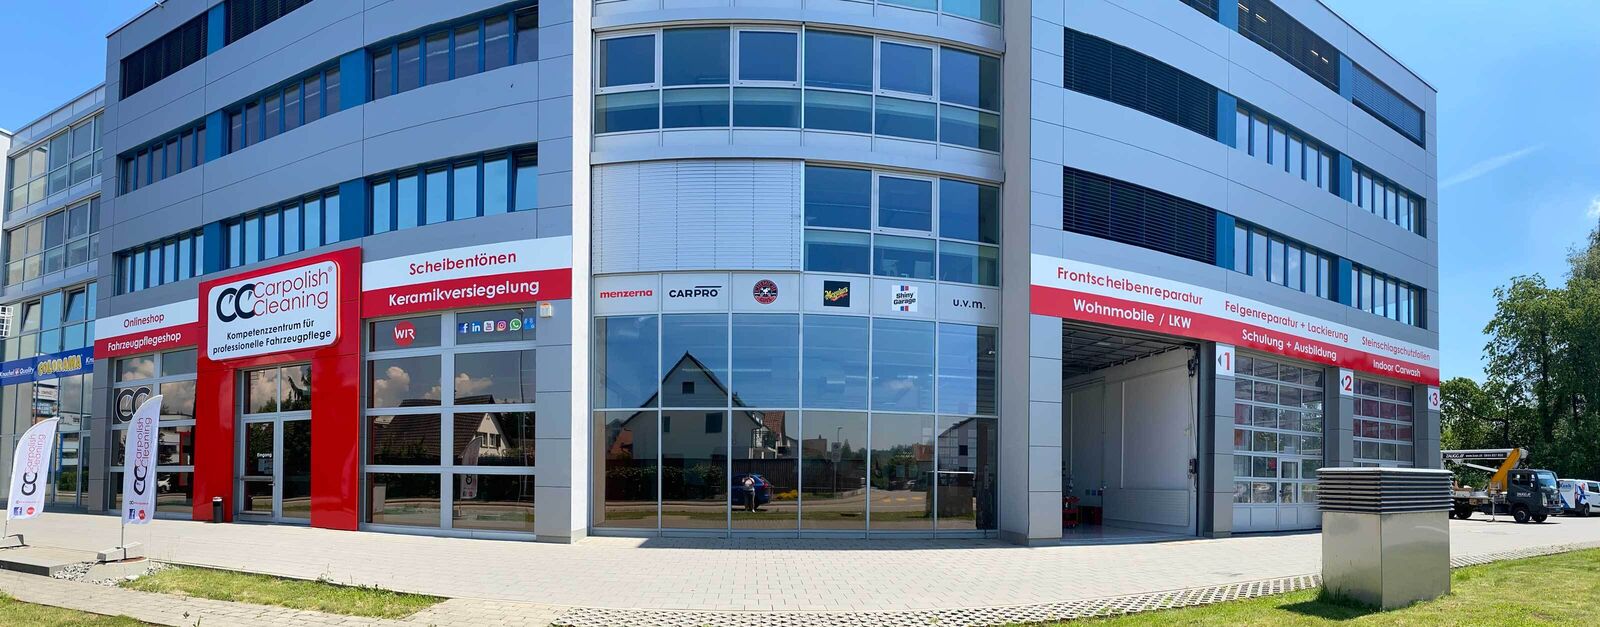 Seit Mai 2021 ist die Carpolish and Cleaning Meyer GmbH am neuen Firmensitz in Oftringen und hat dort auch zwei Indoor-Autowaschplätze.